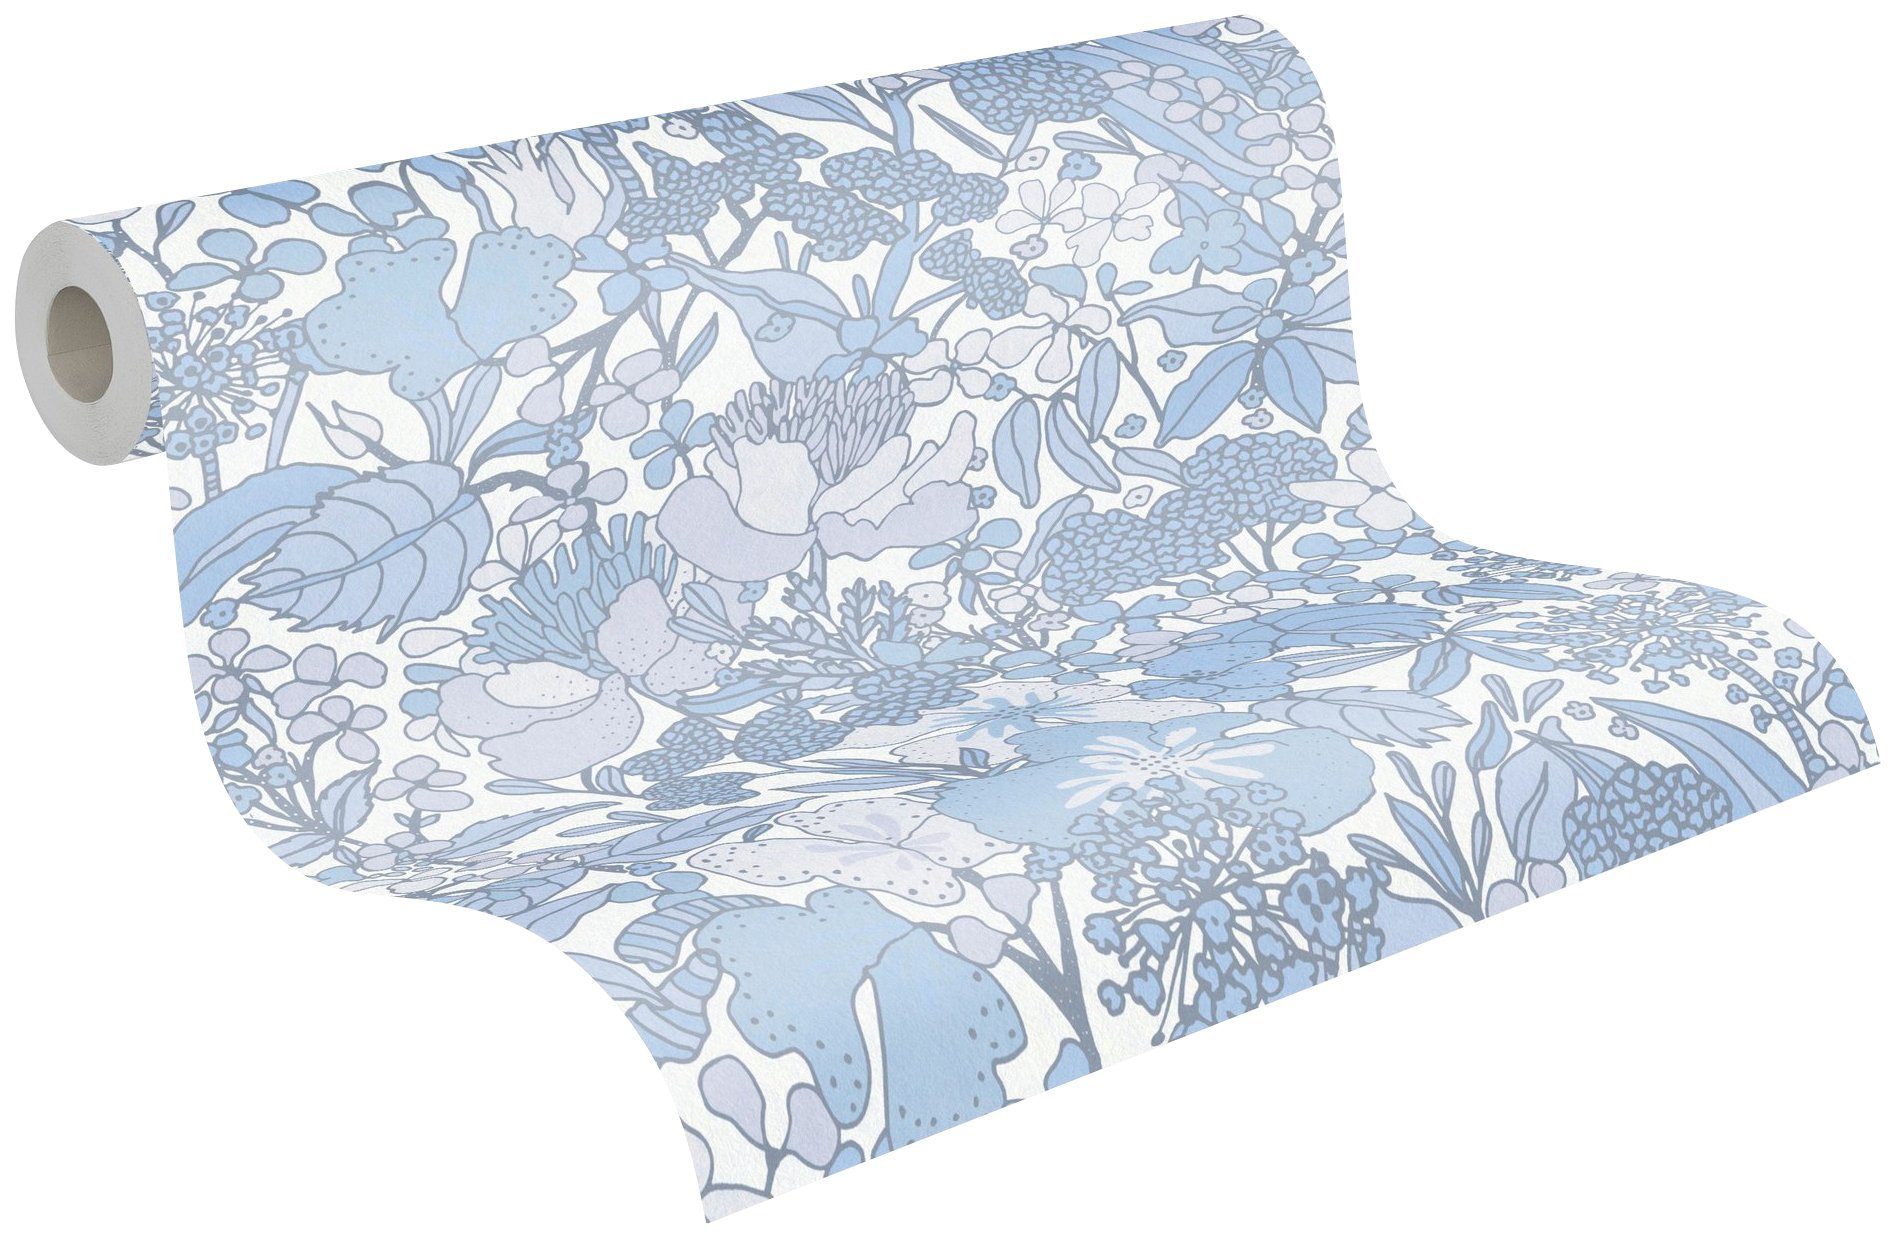 Blumentapete Dschungel Tapete Architects Paper Impression, botanisch, Vliestapete glatt, grau/blau/weiß floral, Floral